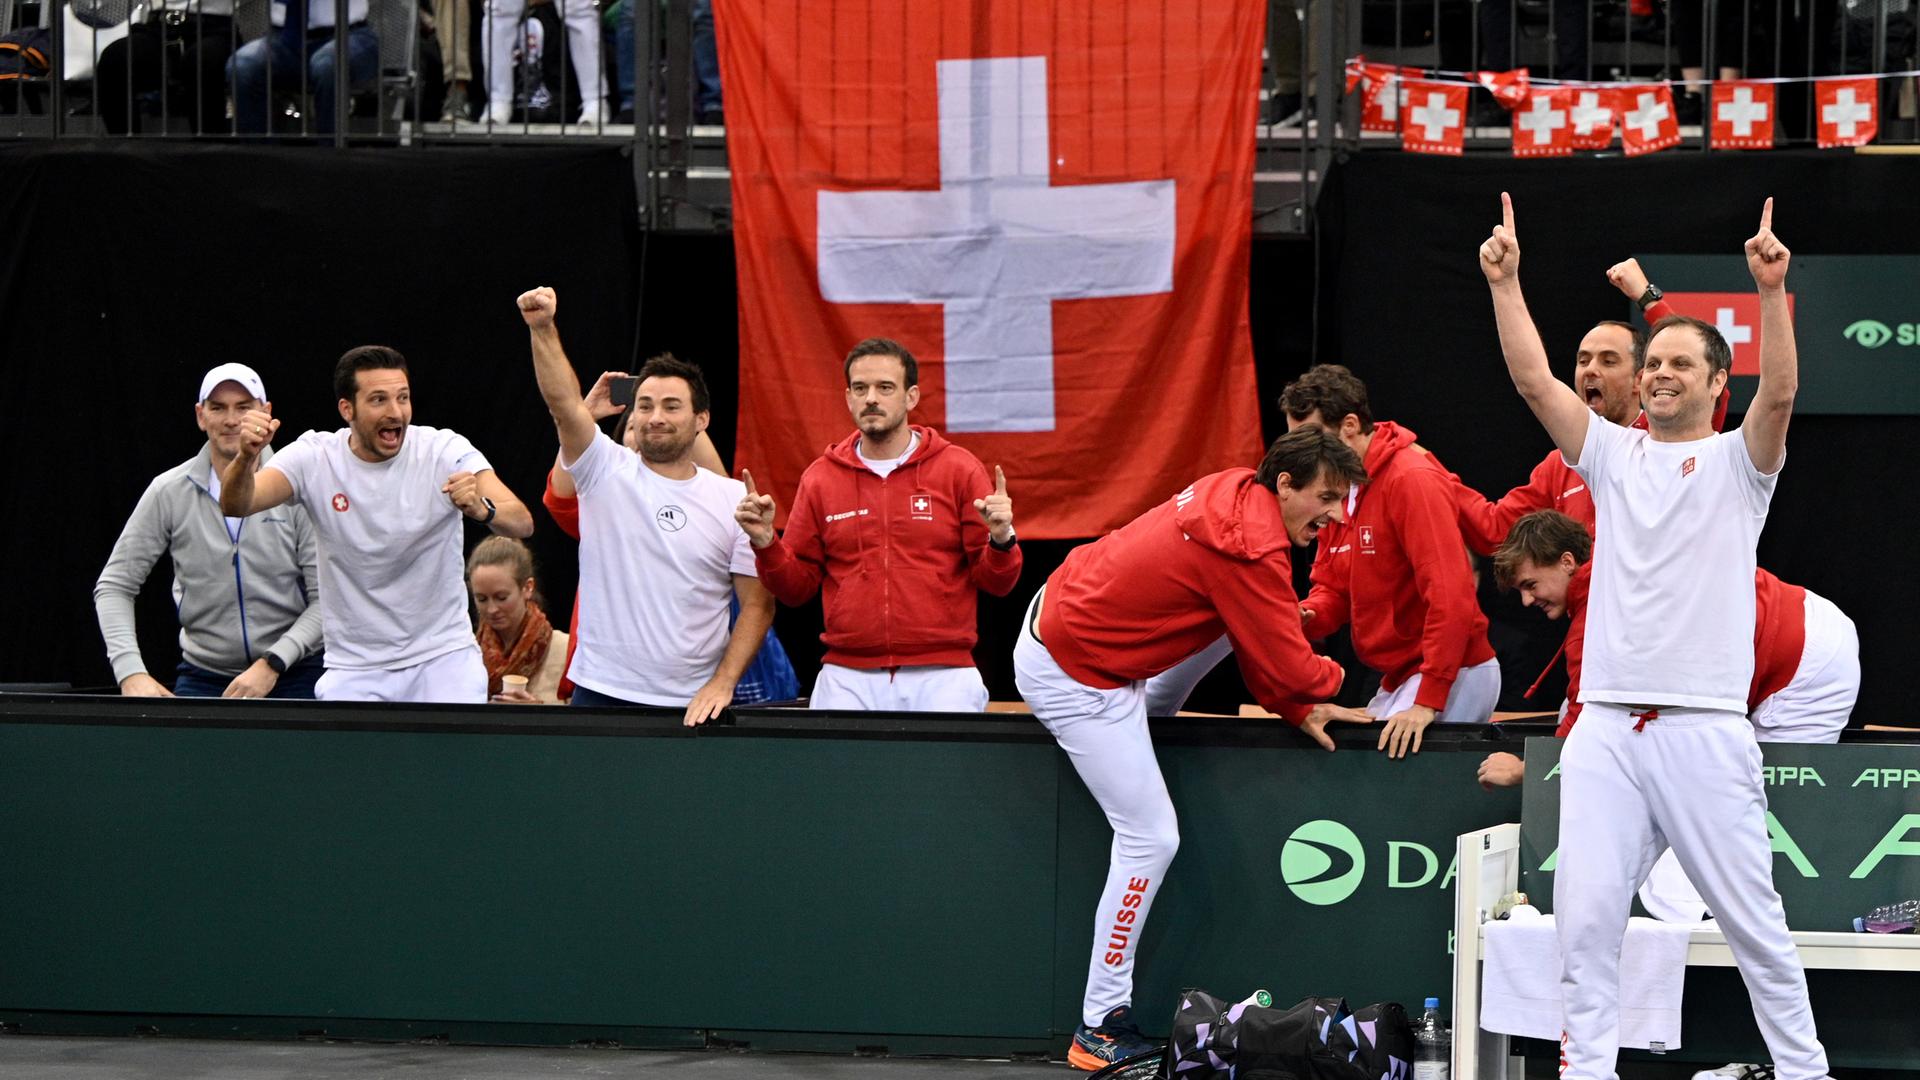 Die Schweizer Tennis-Spieler jubeln am Seitenrand des Spielfelds. Im Hintergrund ist eine schweizerische Flagge zu sehen.